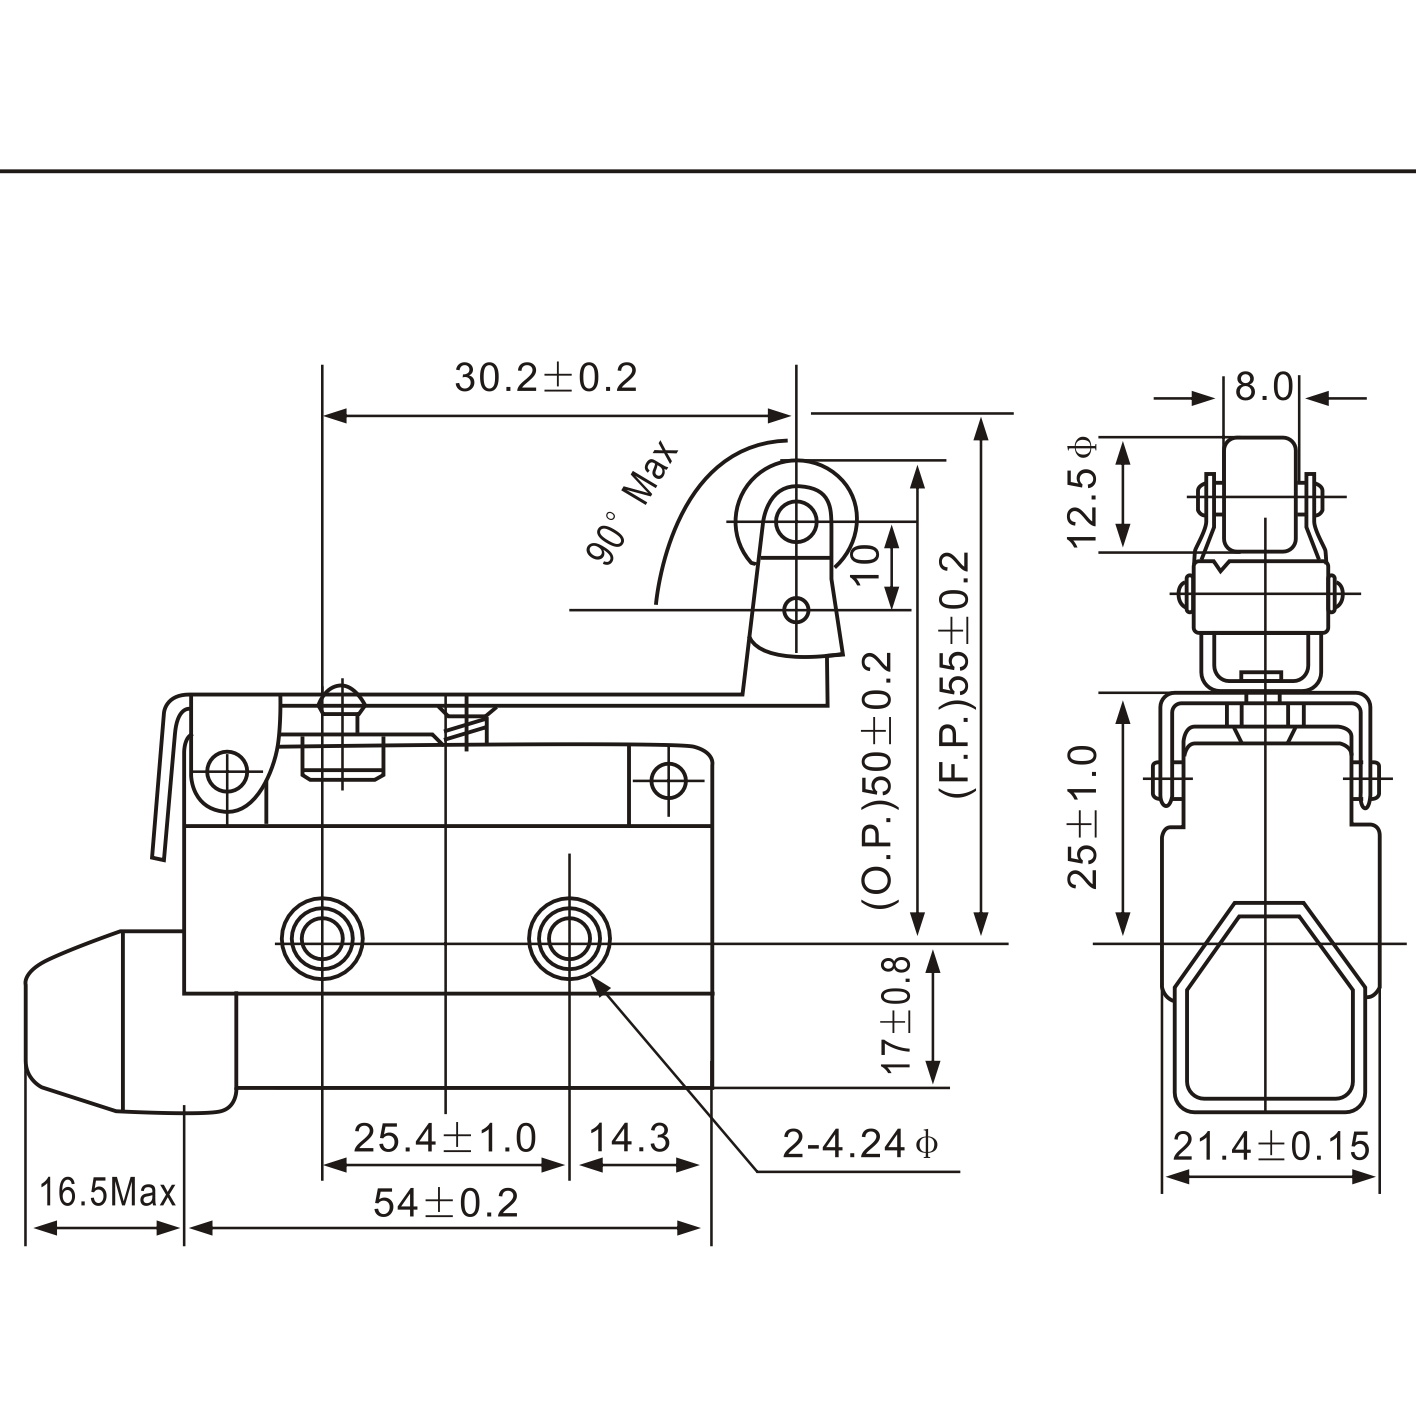 AZ-7144 Roller Lever Actuator Type Limit Switch Diagram